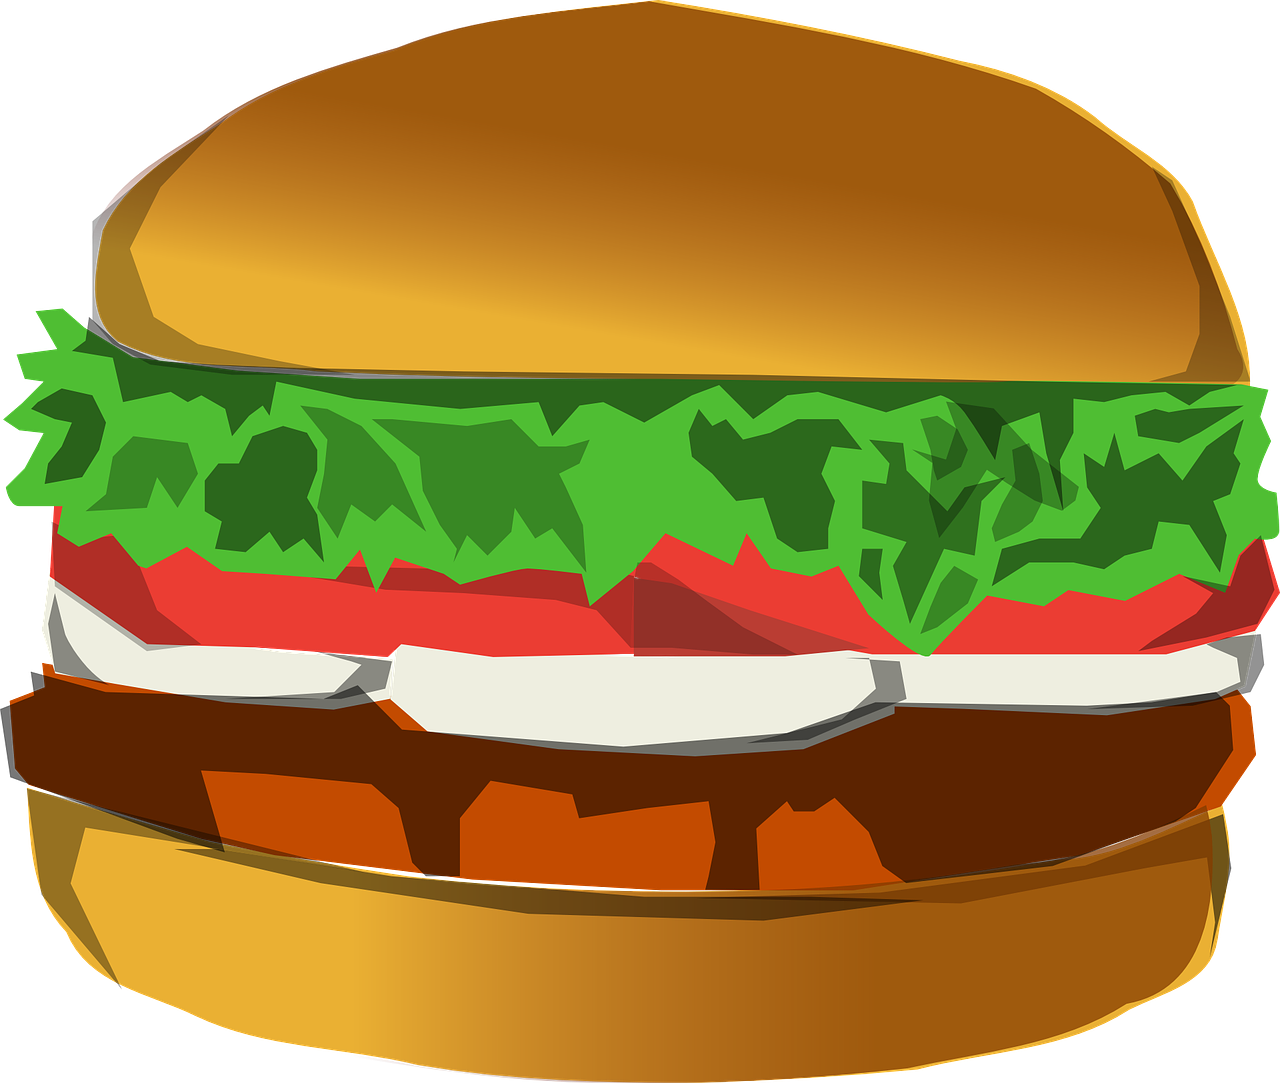 burger junk food hamburger free photo